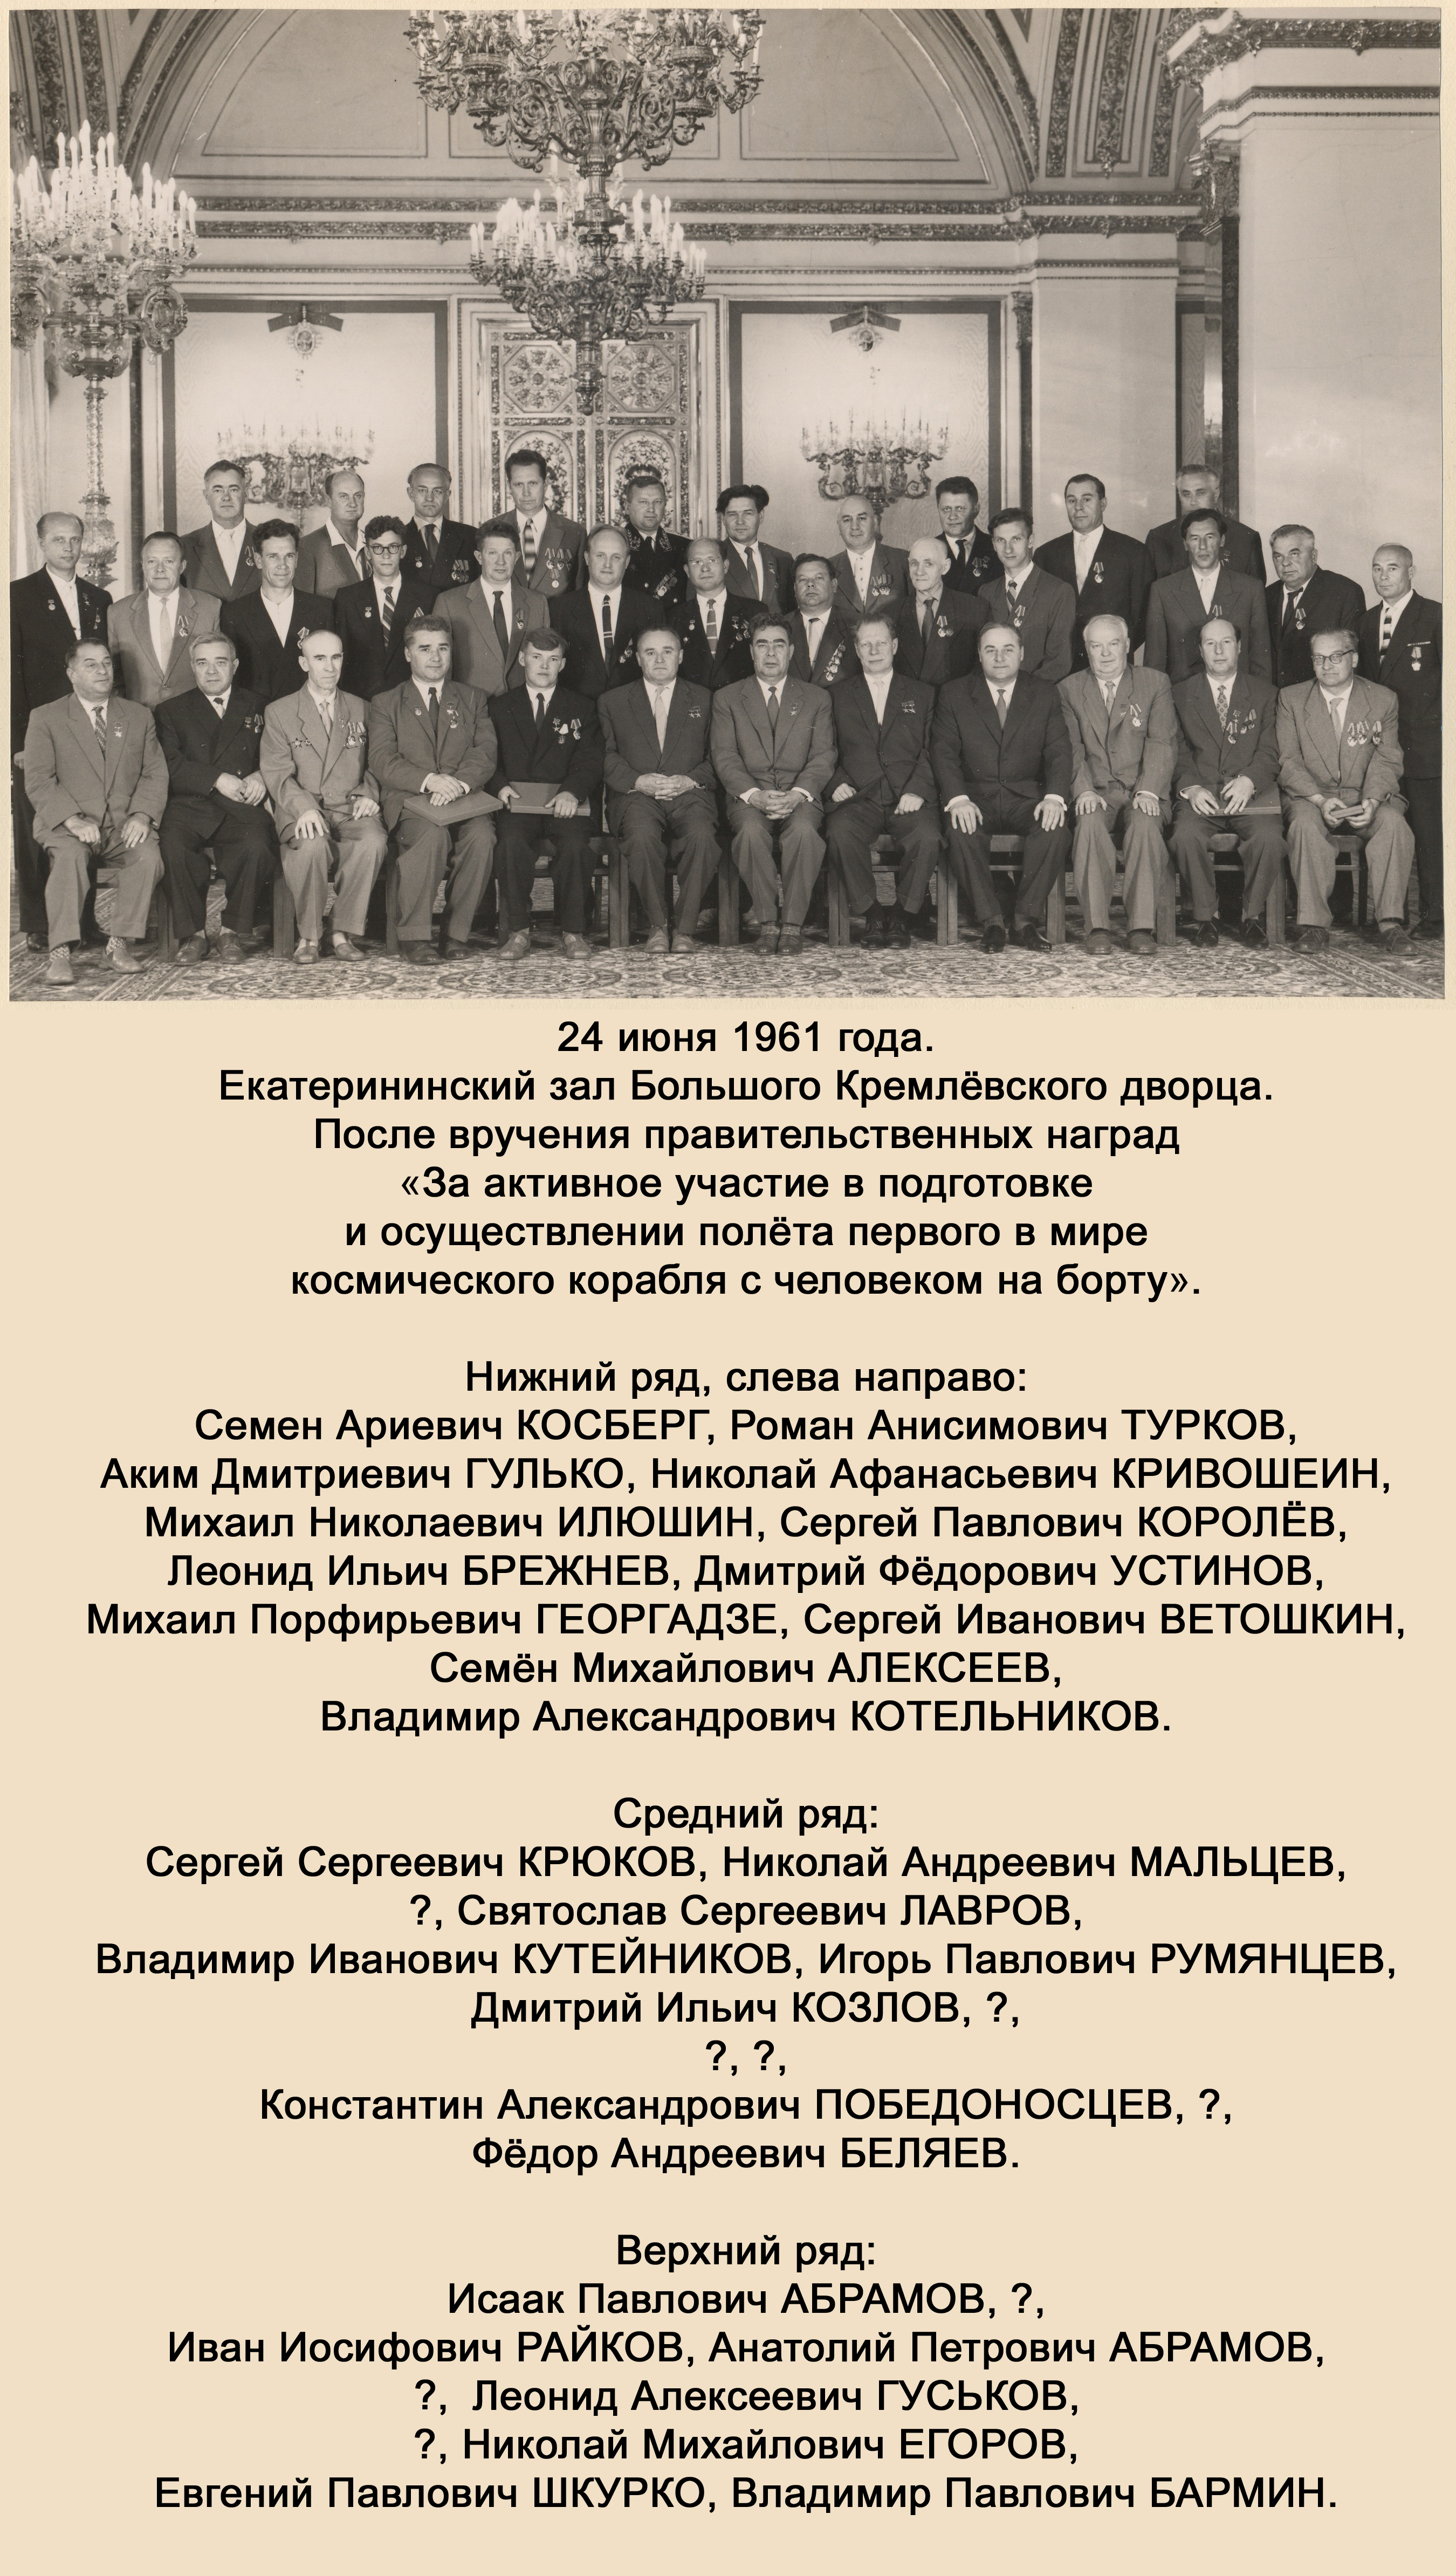 После вручения Правительственных наград (24 июня 1961 года; фотография из архива Лаврова Петра Святославовича)